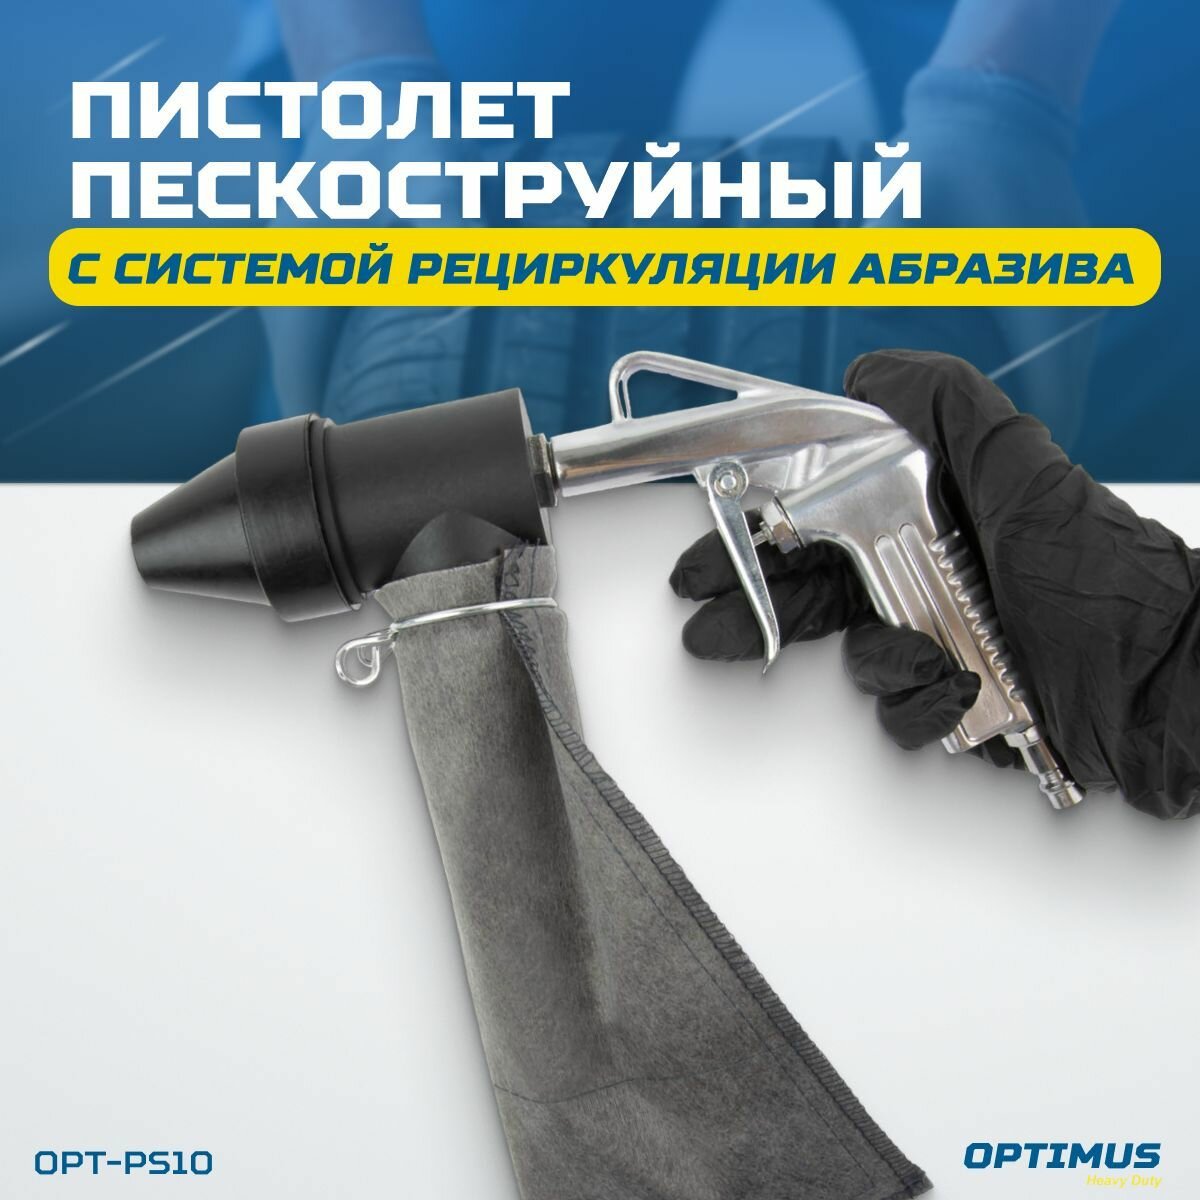 Пистолет пескоструйный OPTIMUS с системой рециркуляции абразива OPT-PS10